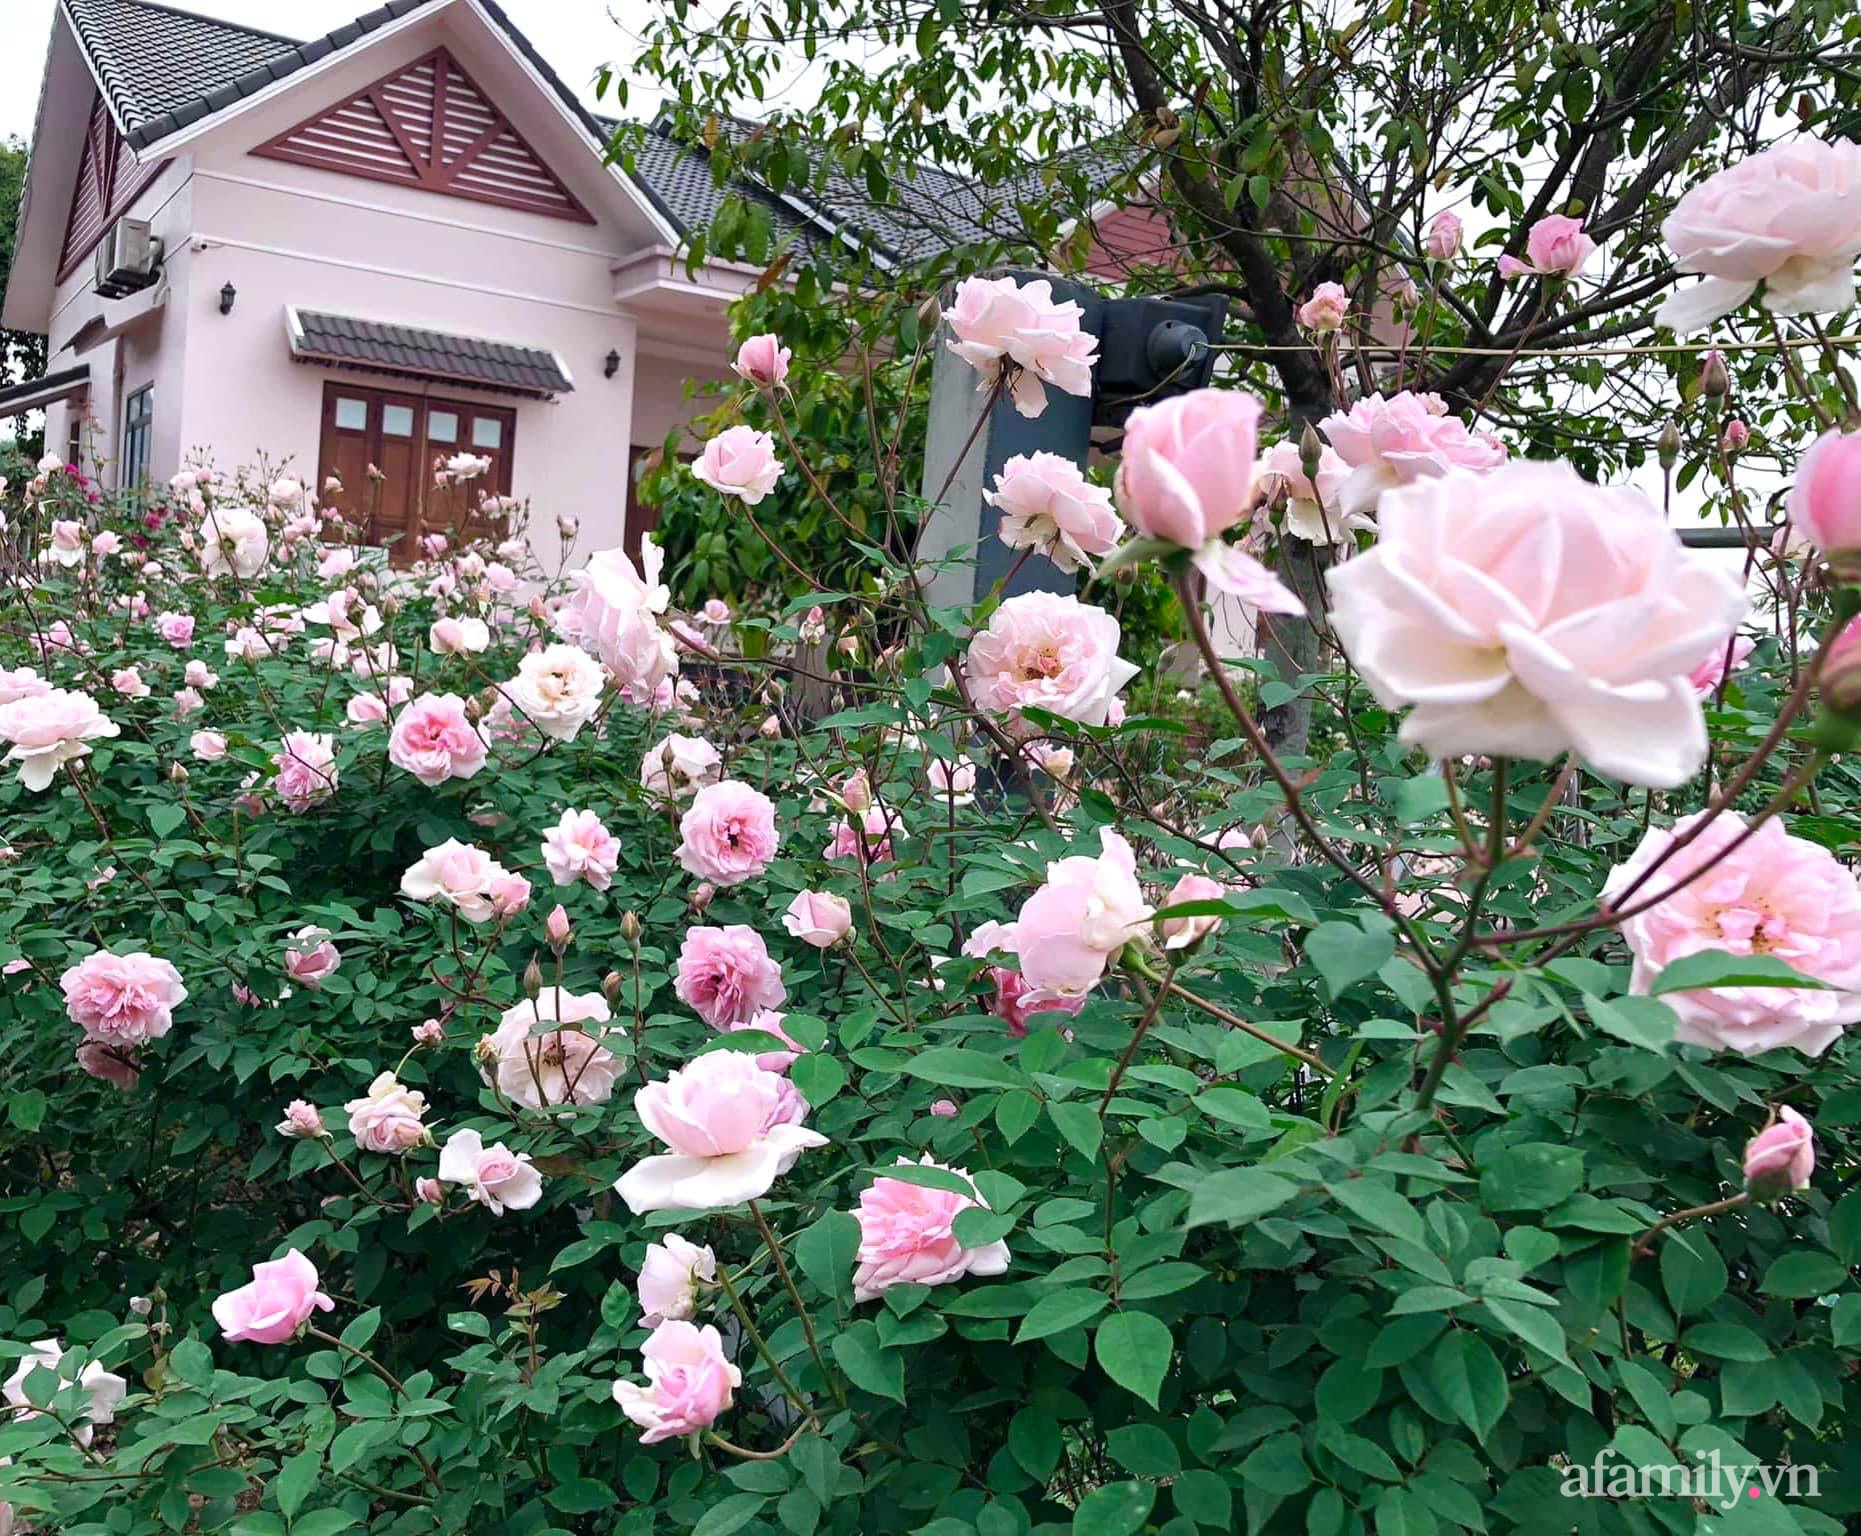 Cuộc sống an yên giữa đồi núi trong ngôi nhà hoa hồng quanh năm tỏa hương sắc của gia đình ở Ba Vì - Ảnh 3.